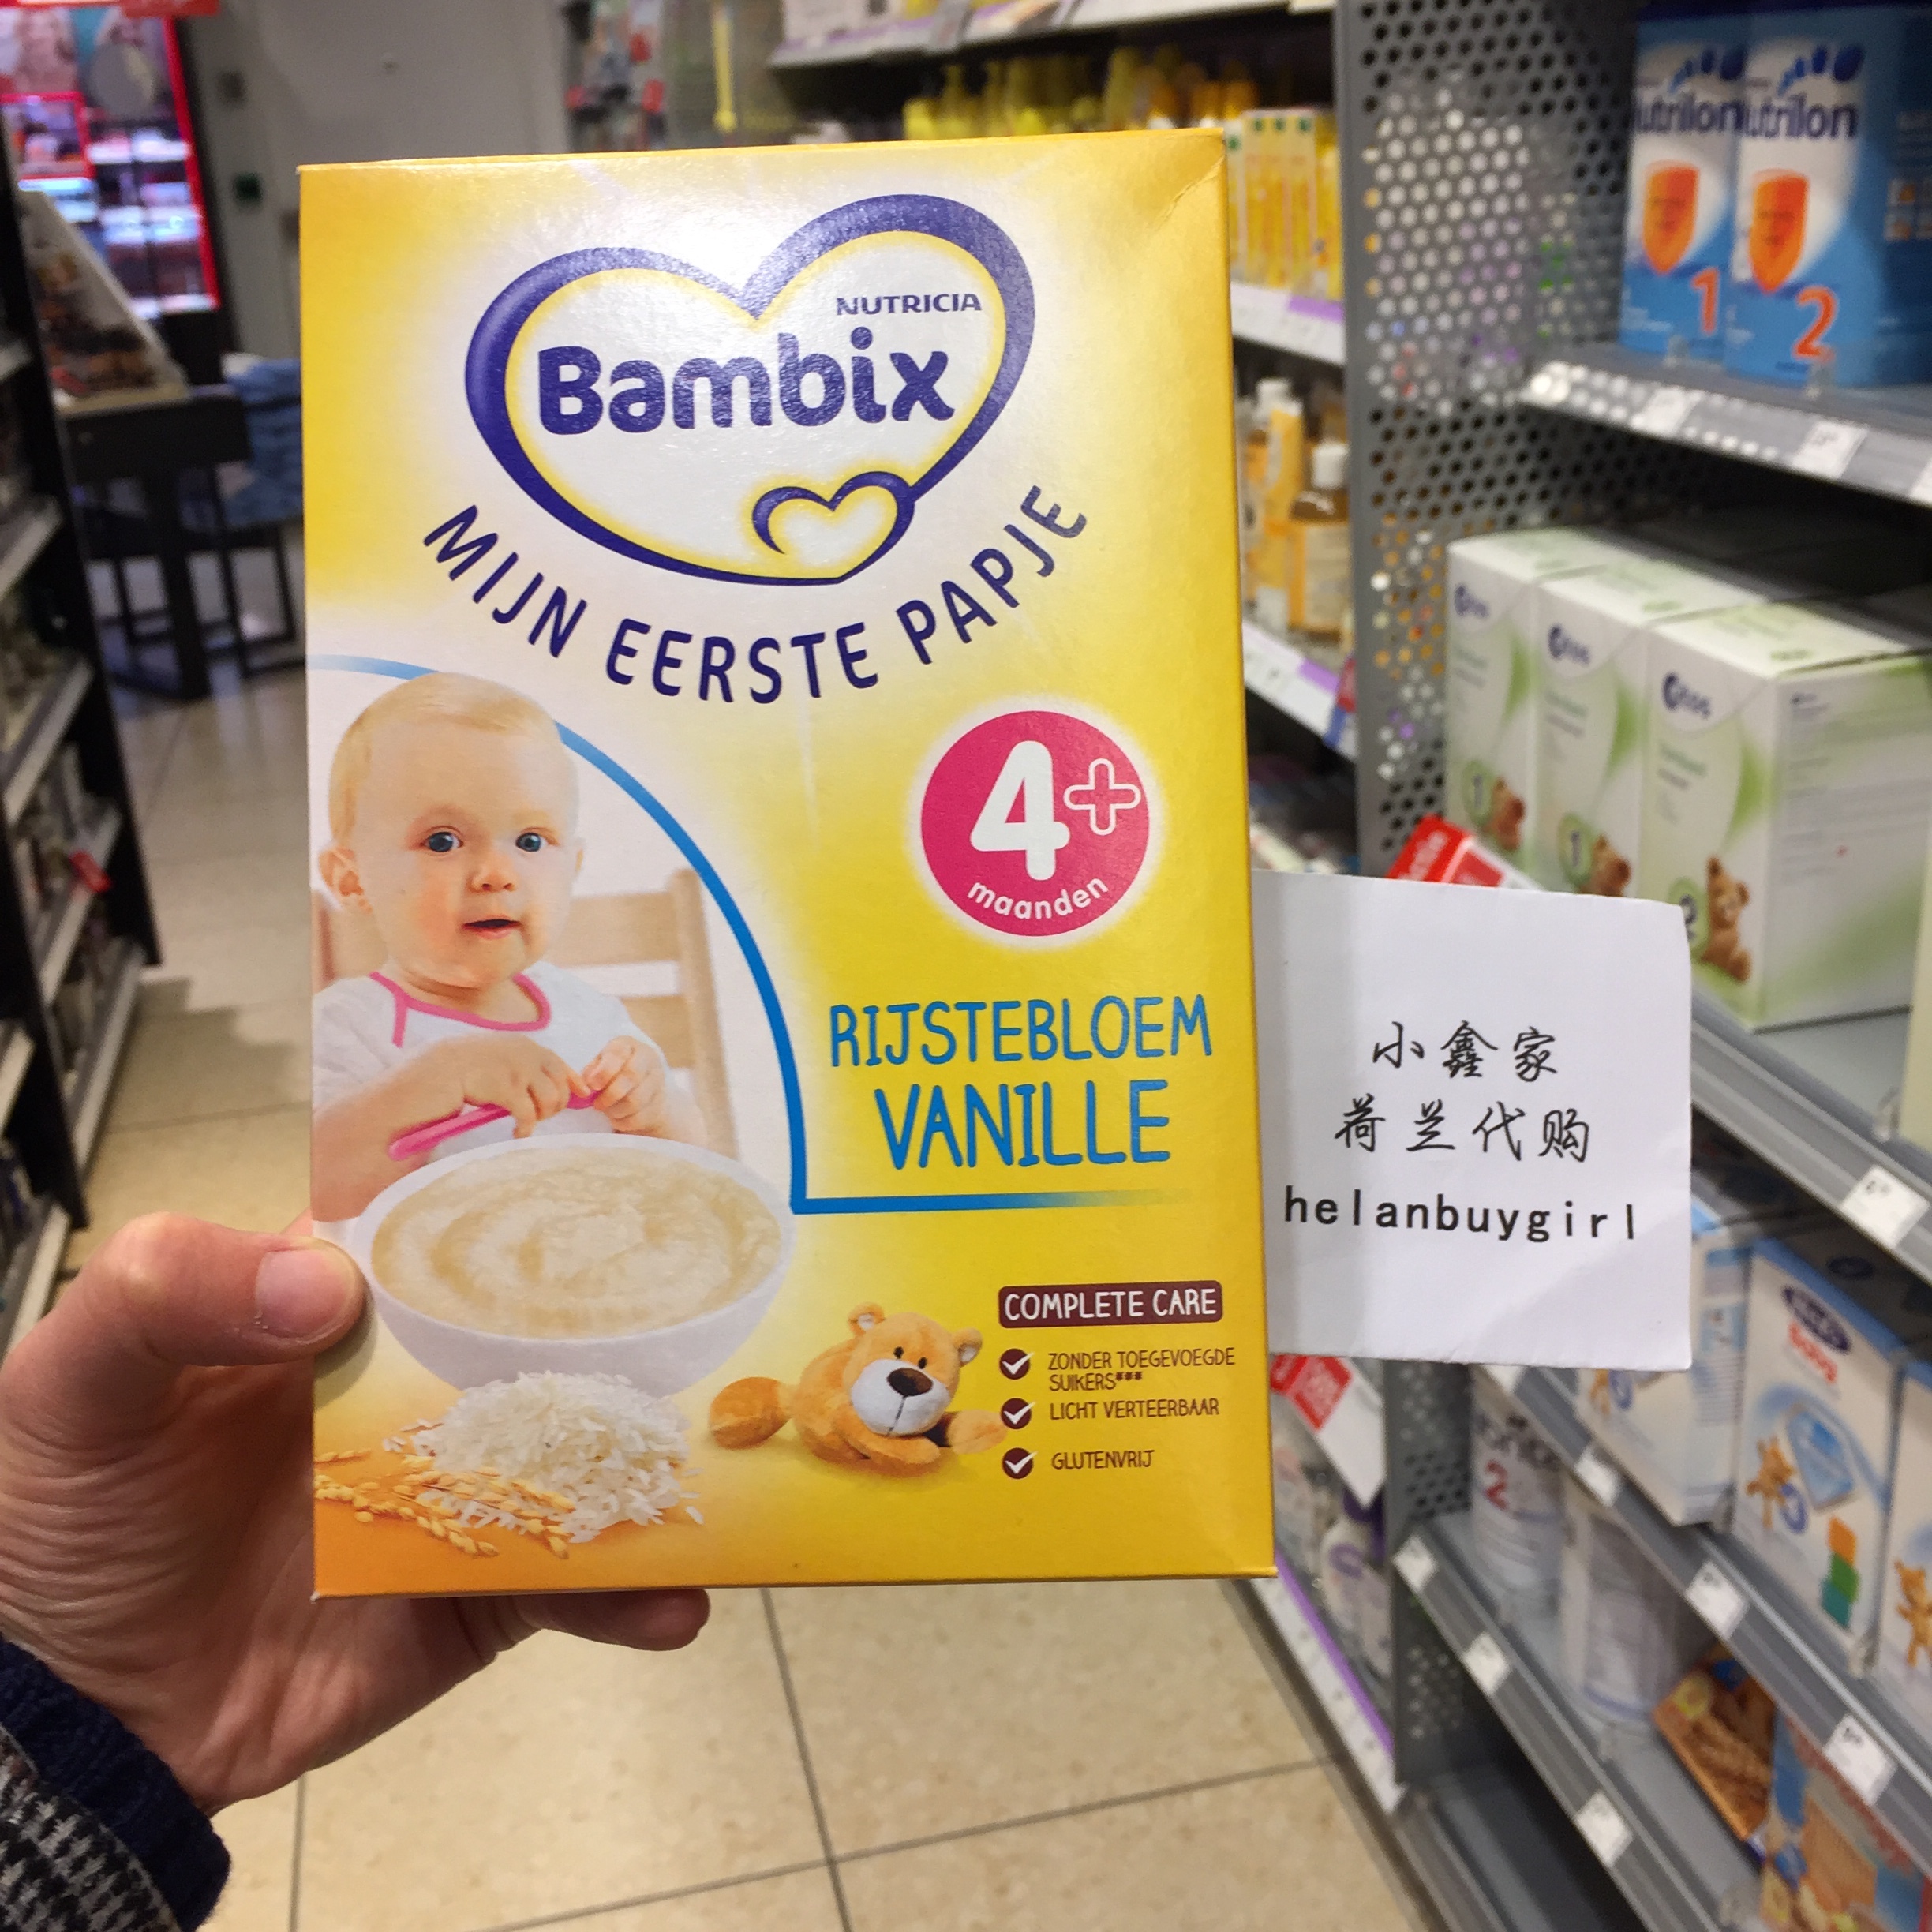 荷兰代购直邮 牛栏Bambix 婴儿辅食纯大米米糊 香草味 4个月以上